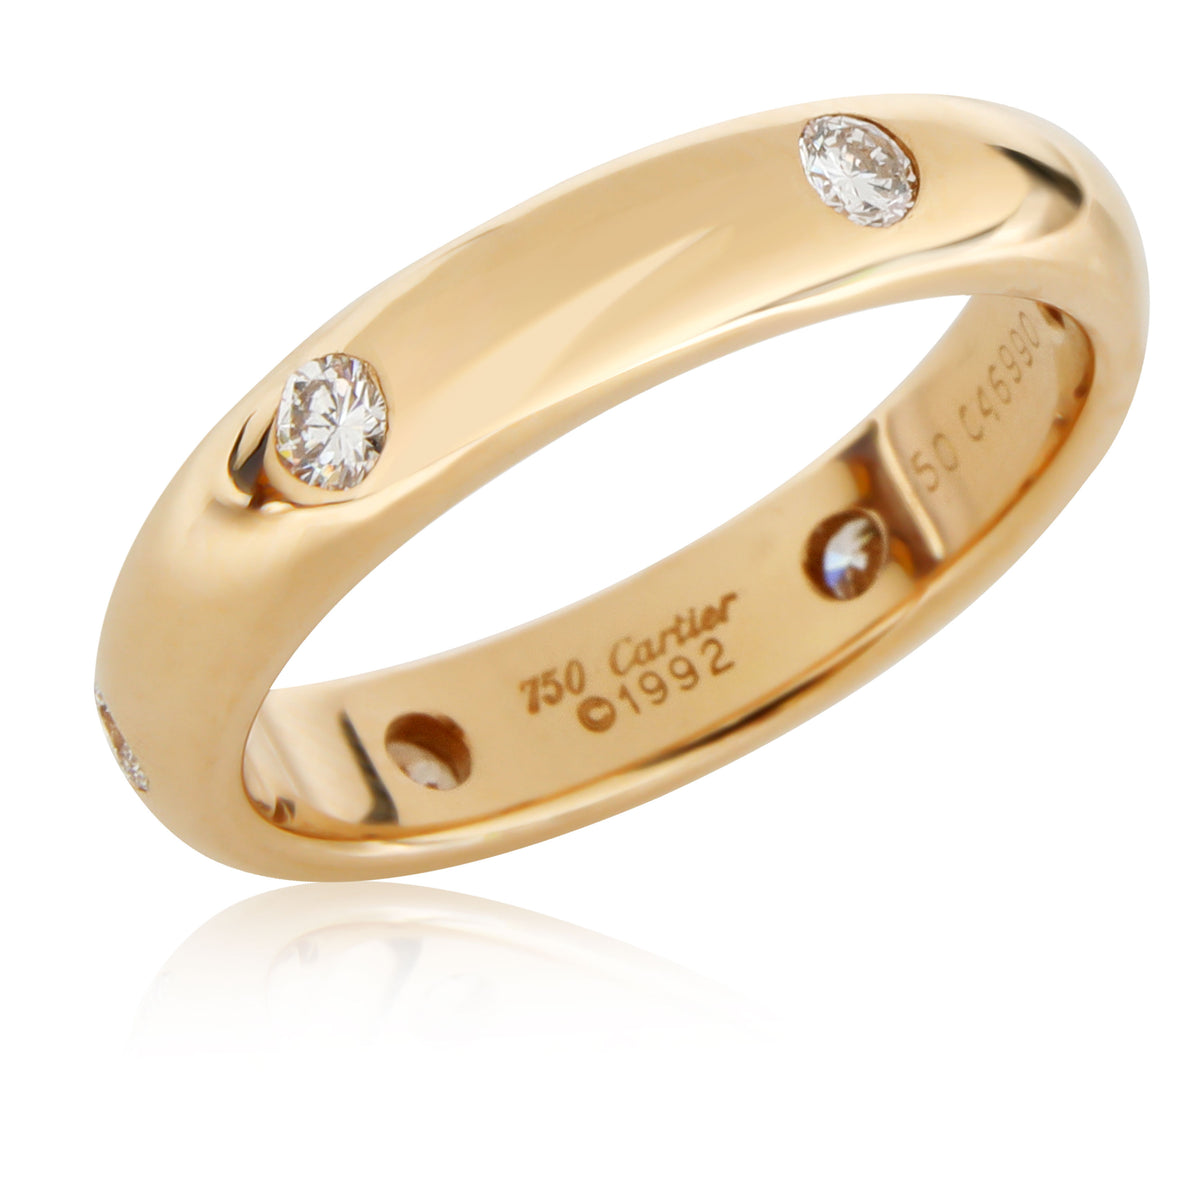 Louis Vuitton Large Empreinte Ring in 18k White Gold, myGemma, QA